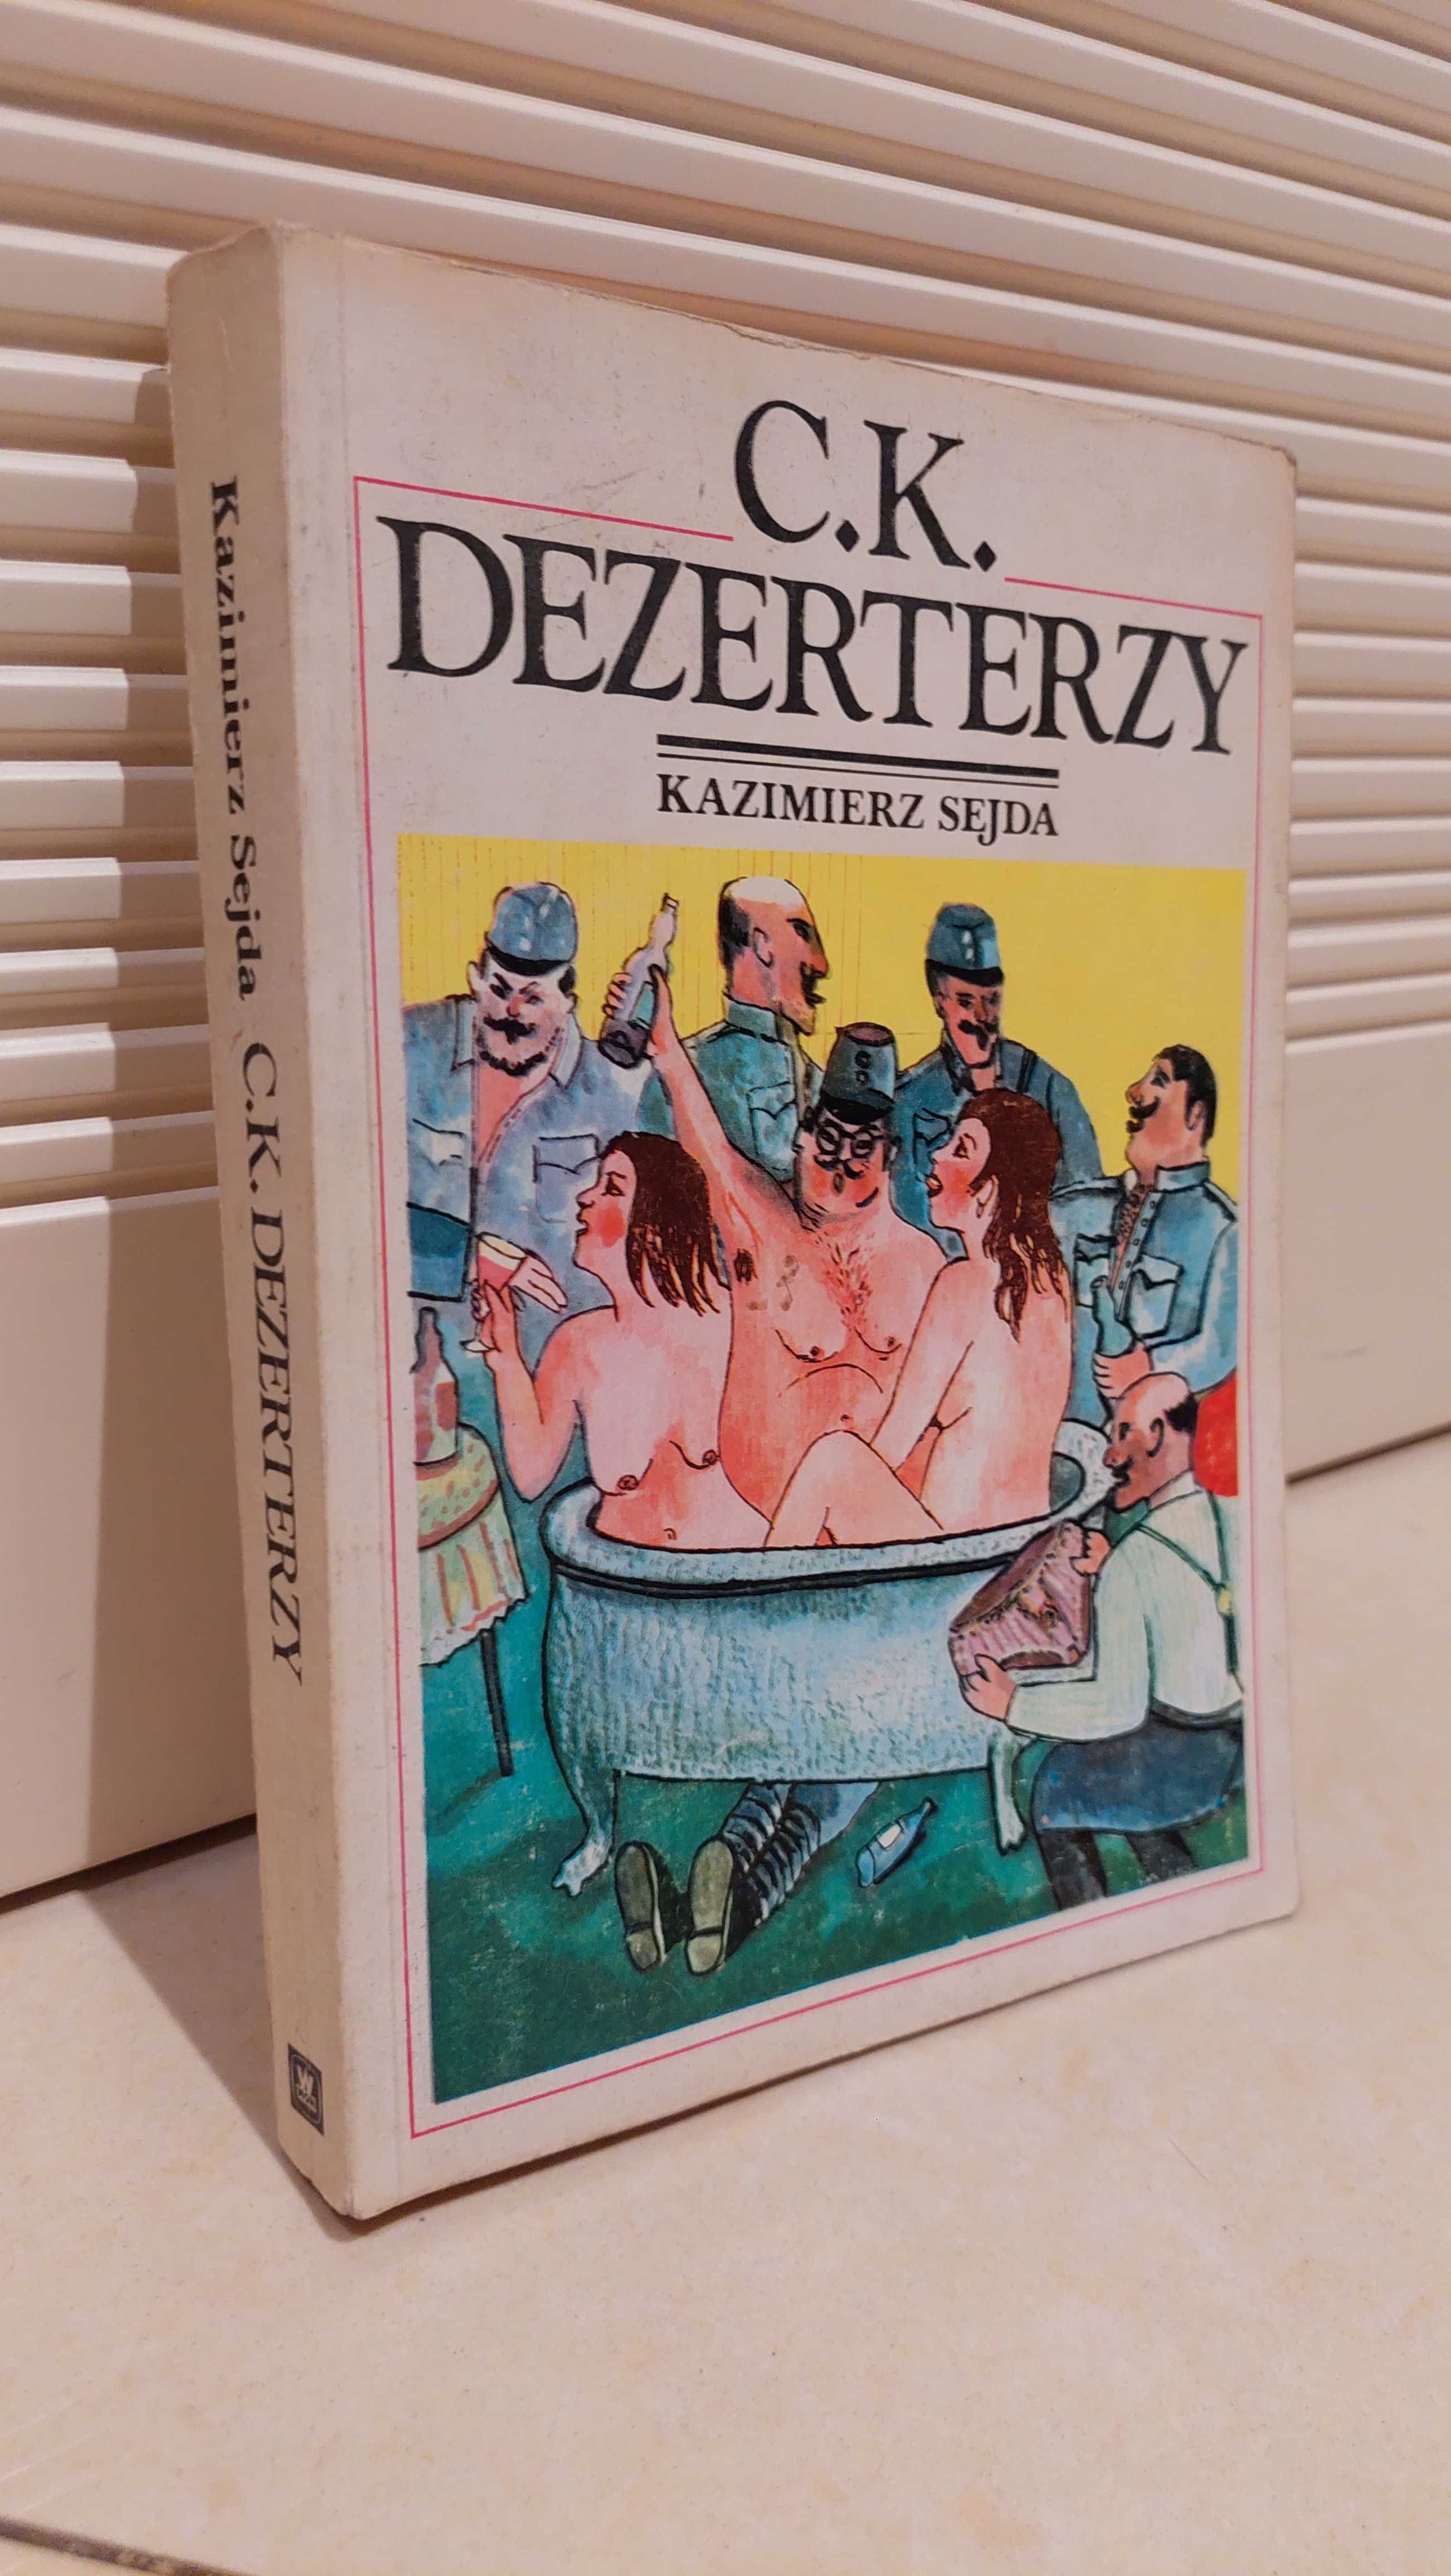 CK Dezerterzy autor Kazimierz sajda